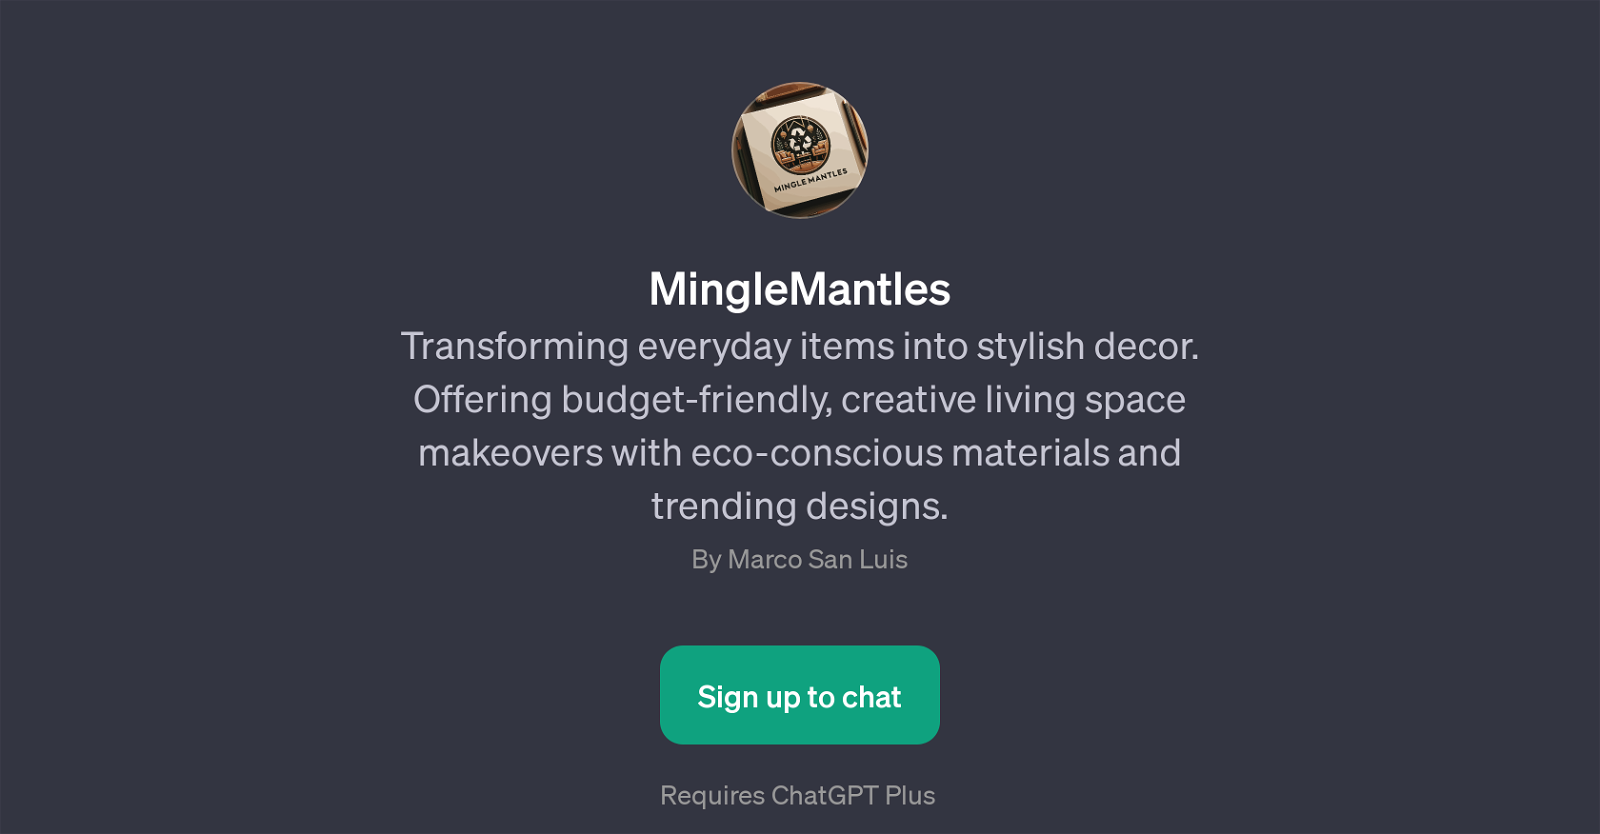 MingleMantles website